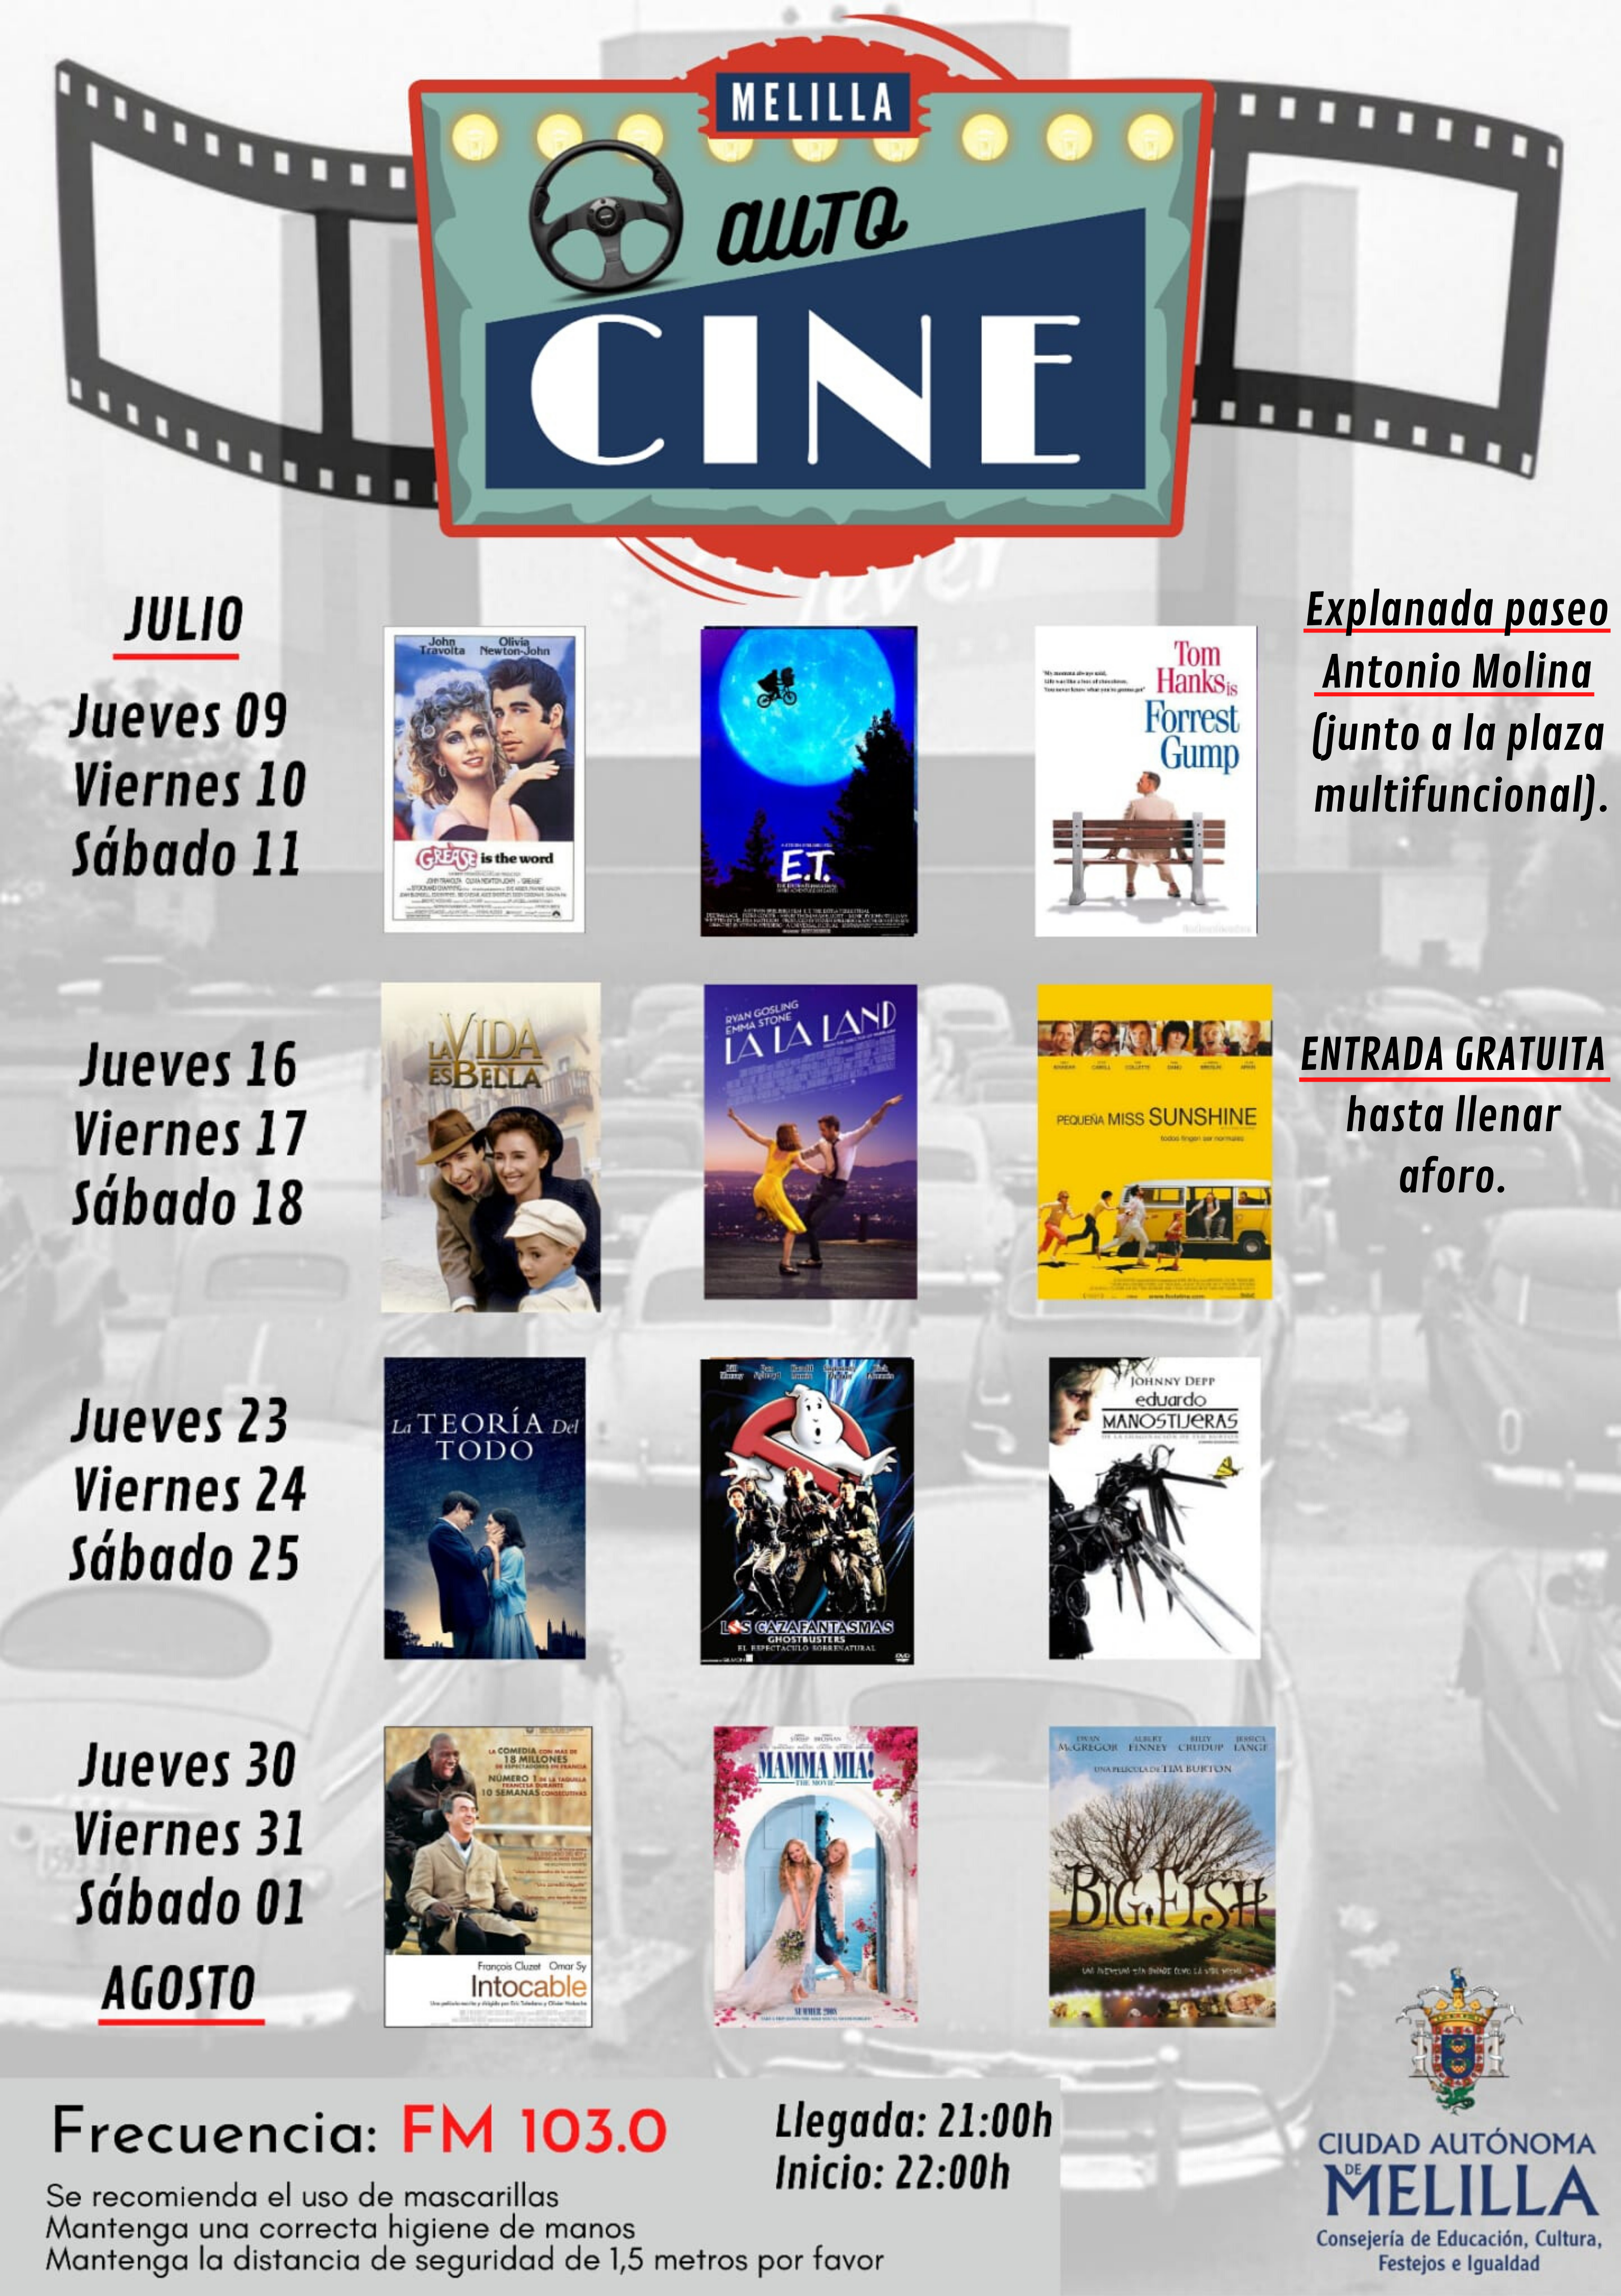 La Consejería de Cultura presenta el Autocine gratuito que proyectará 12 películas durante los próximos 4 fines de semana